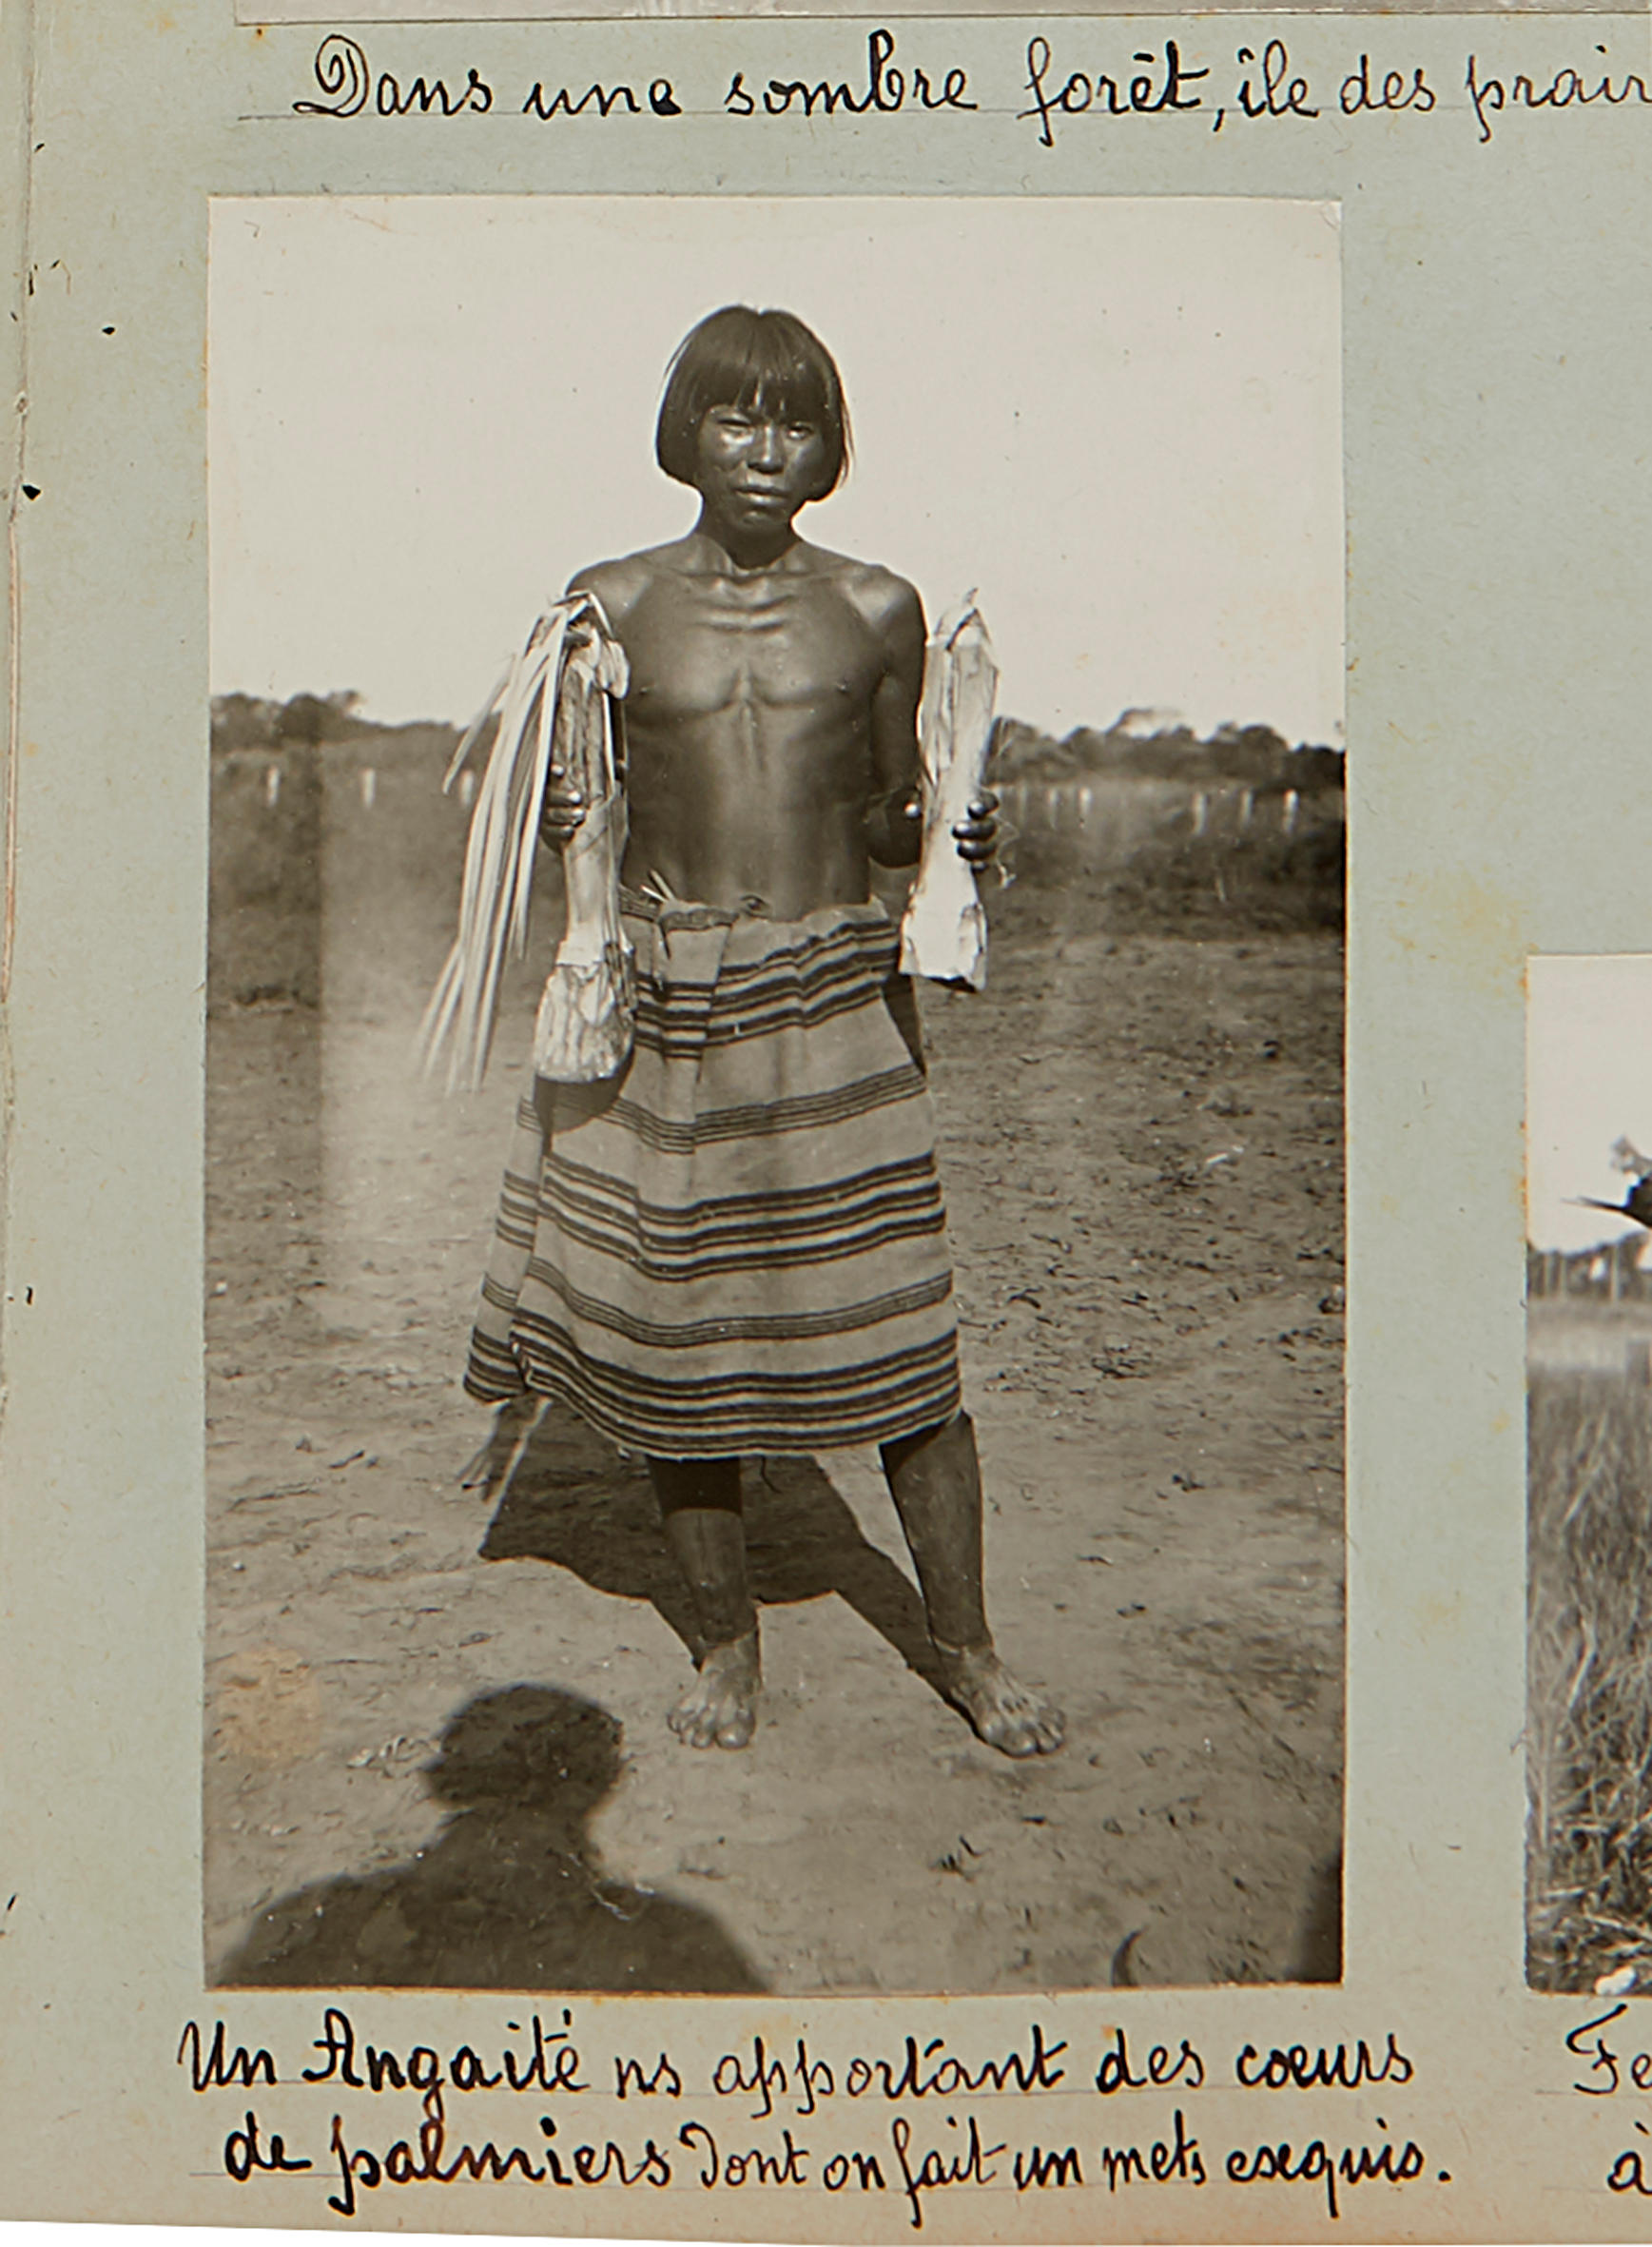 Foto de um indígena em trajes típicos